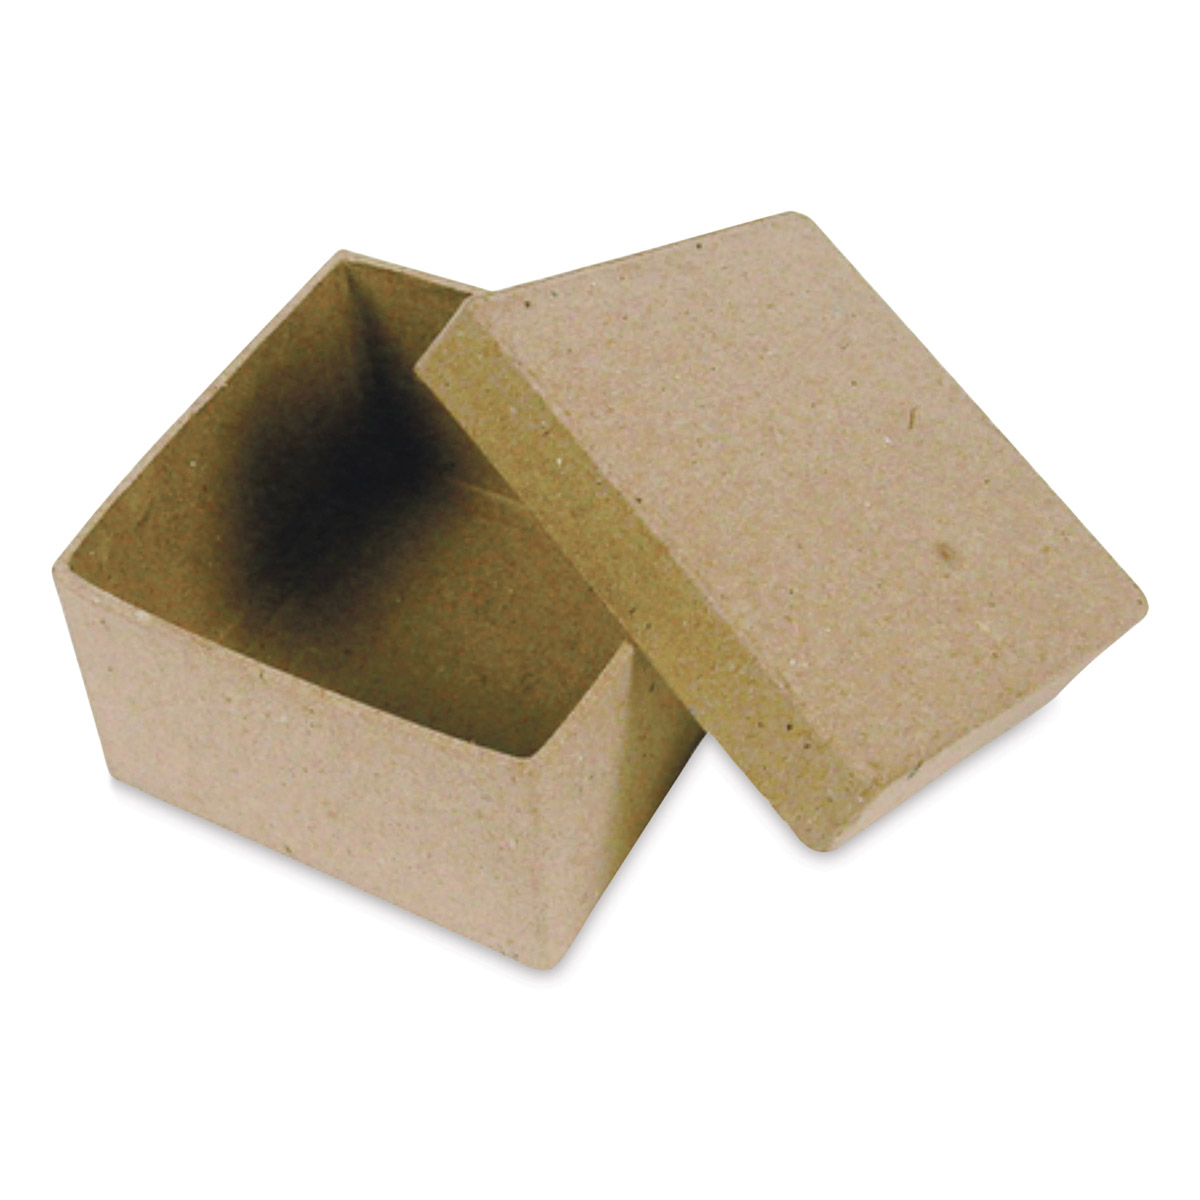 Paper Mache Boxes - Paper Mache Boxes with Lids